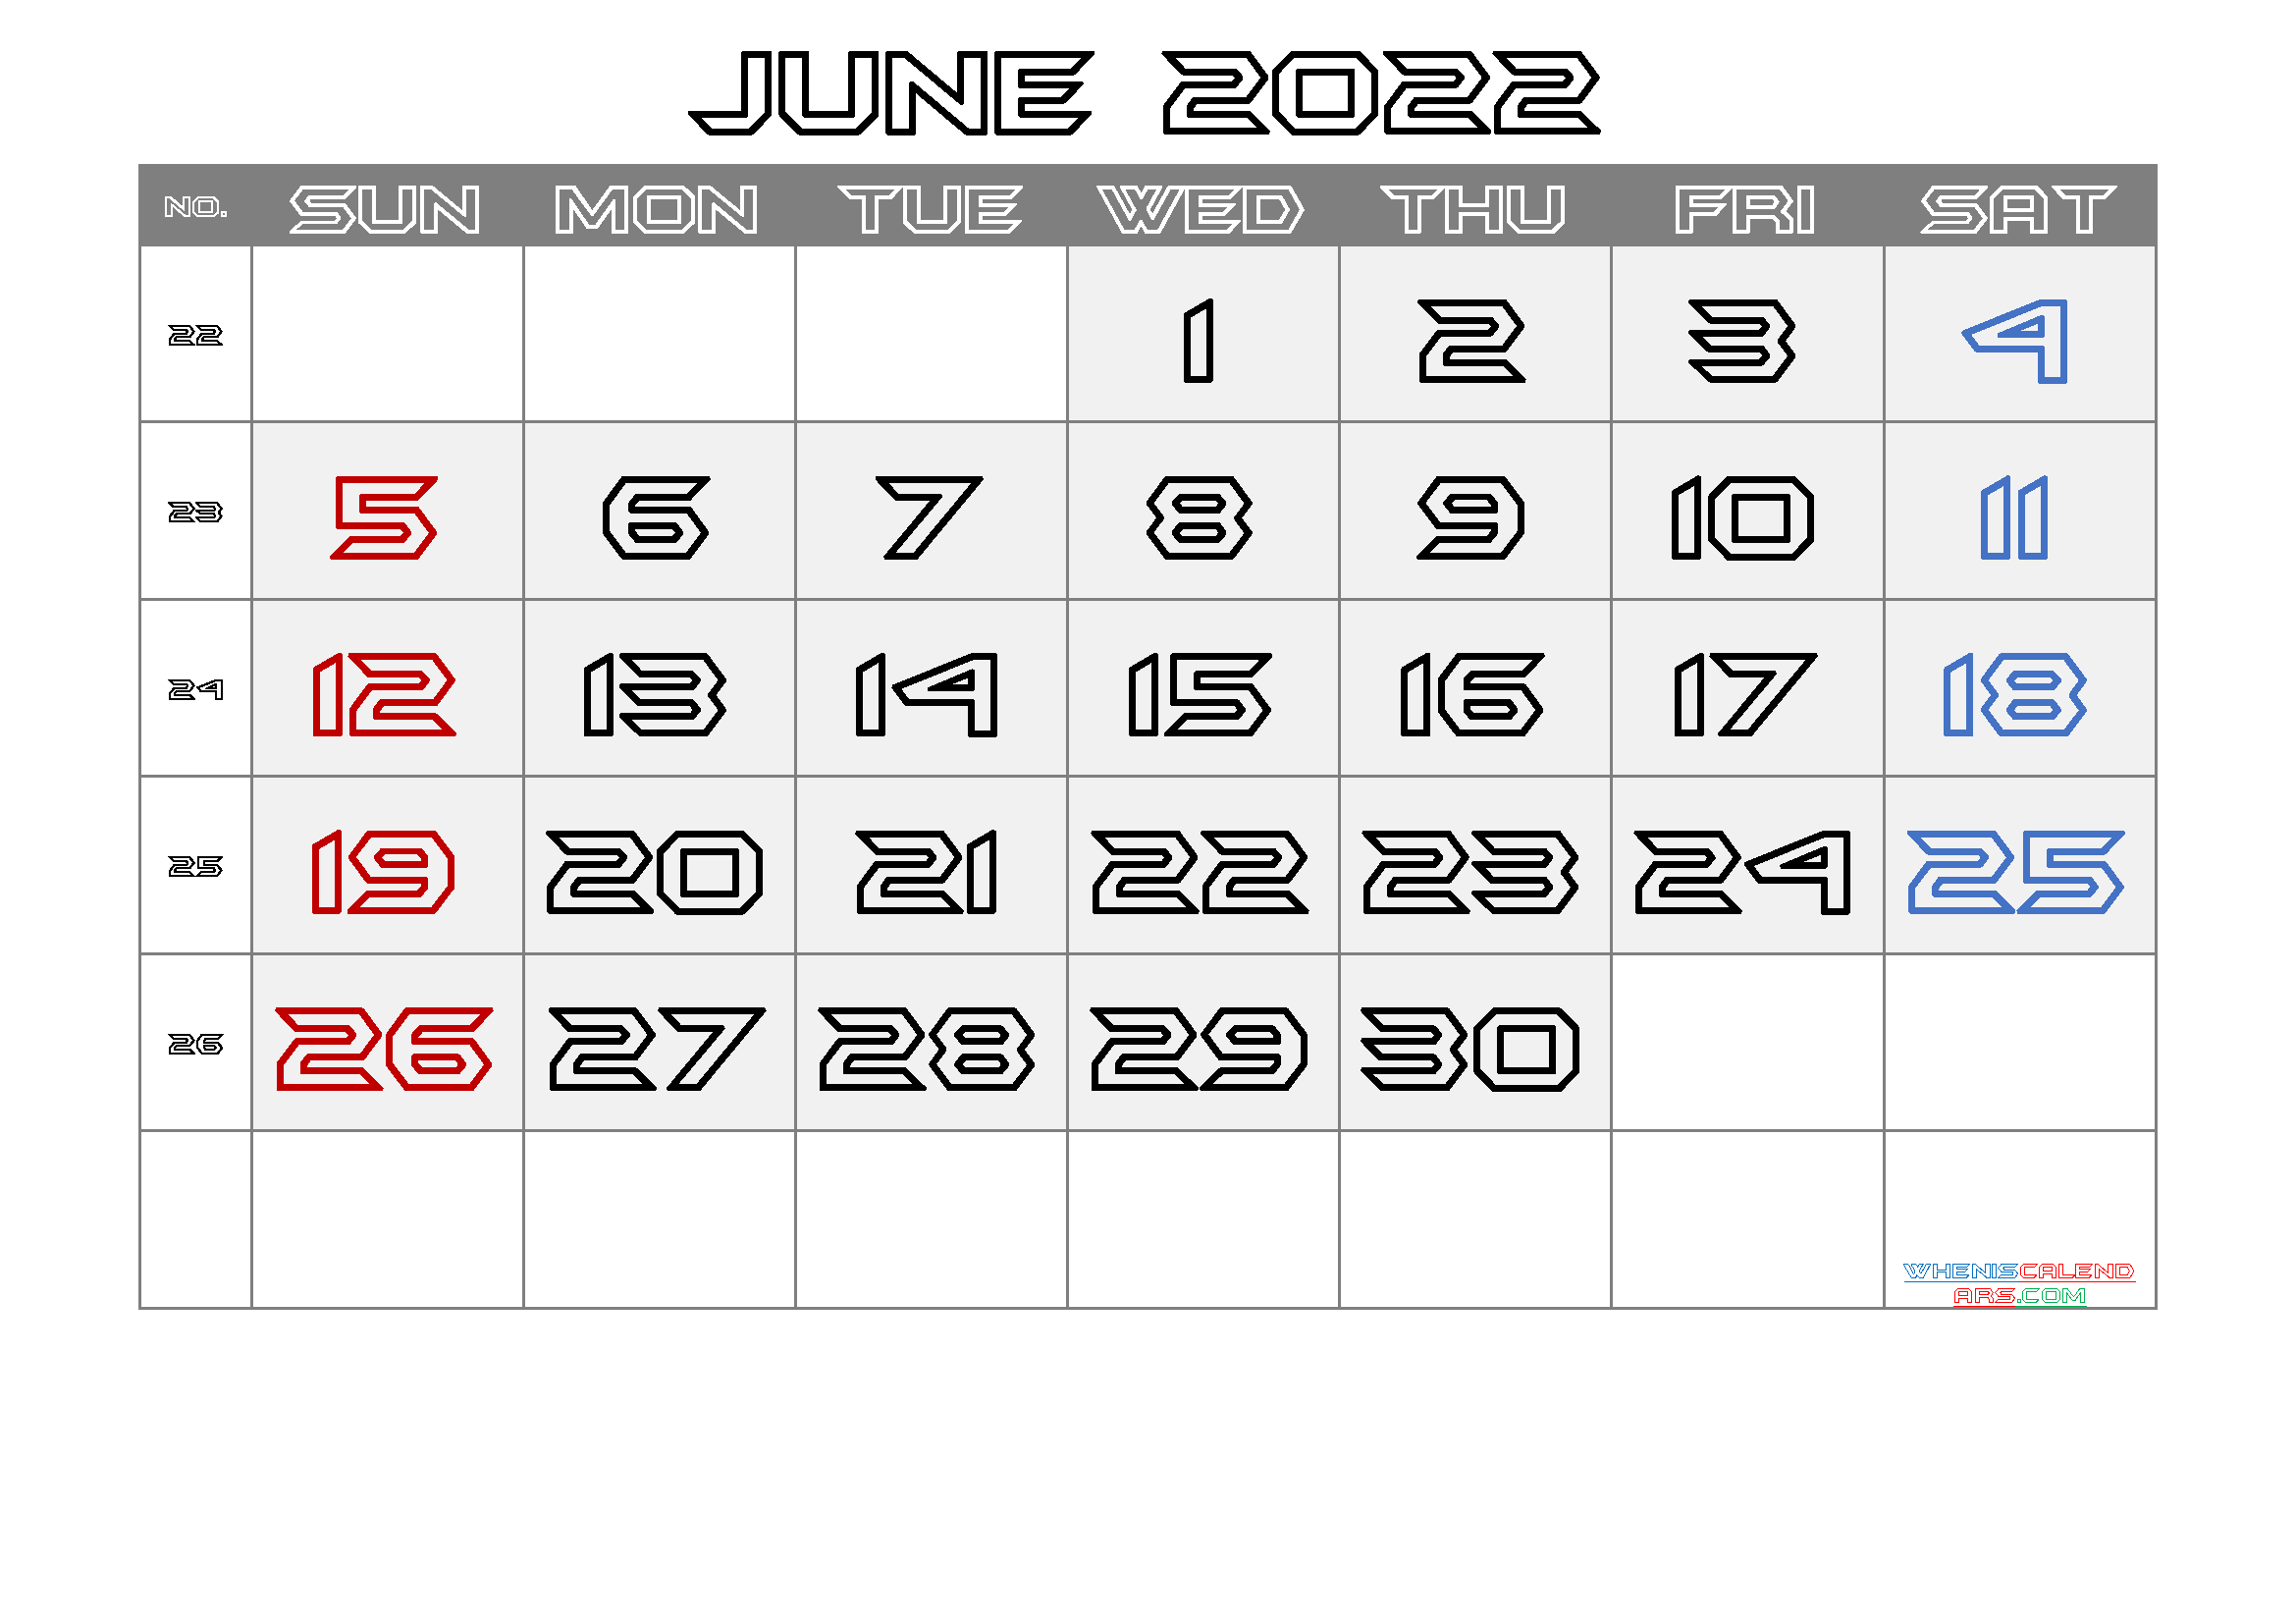 Free June 2022 Printable Calendar